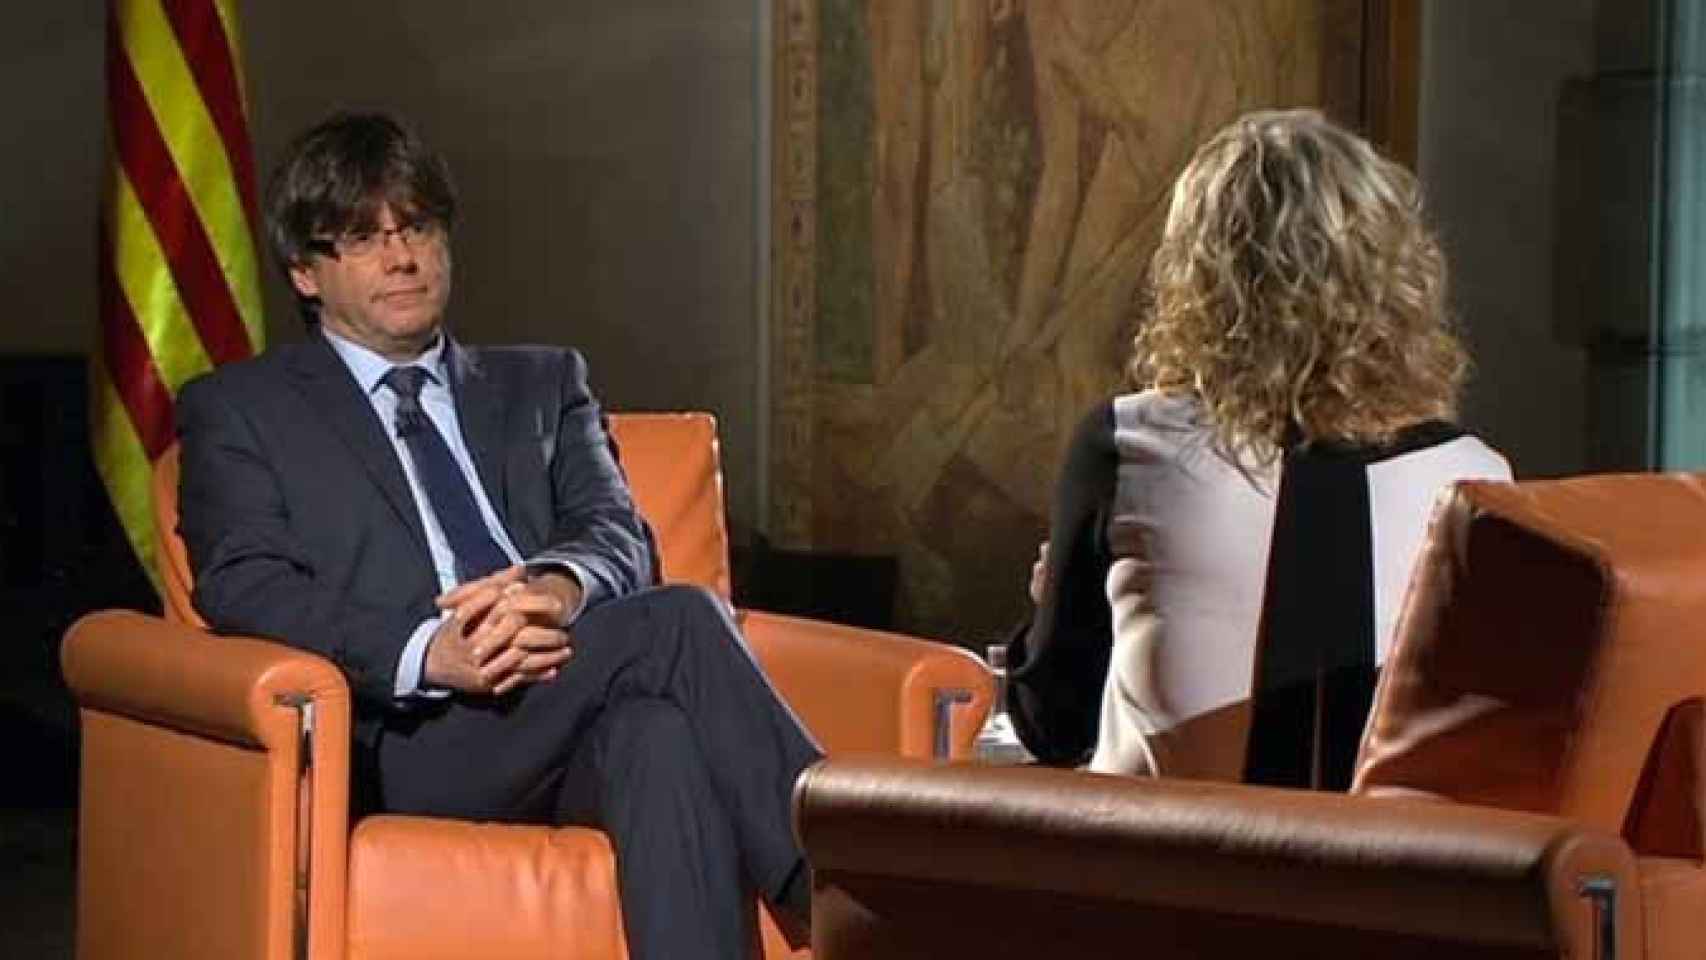 Entrevista al presidente de la Generalitat, Carles Puigdemont, en la televisión catalana, cuyas subvenciones han sido objeto de una queja en Bruselas / CCMA